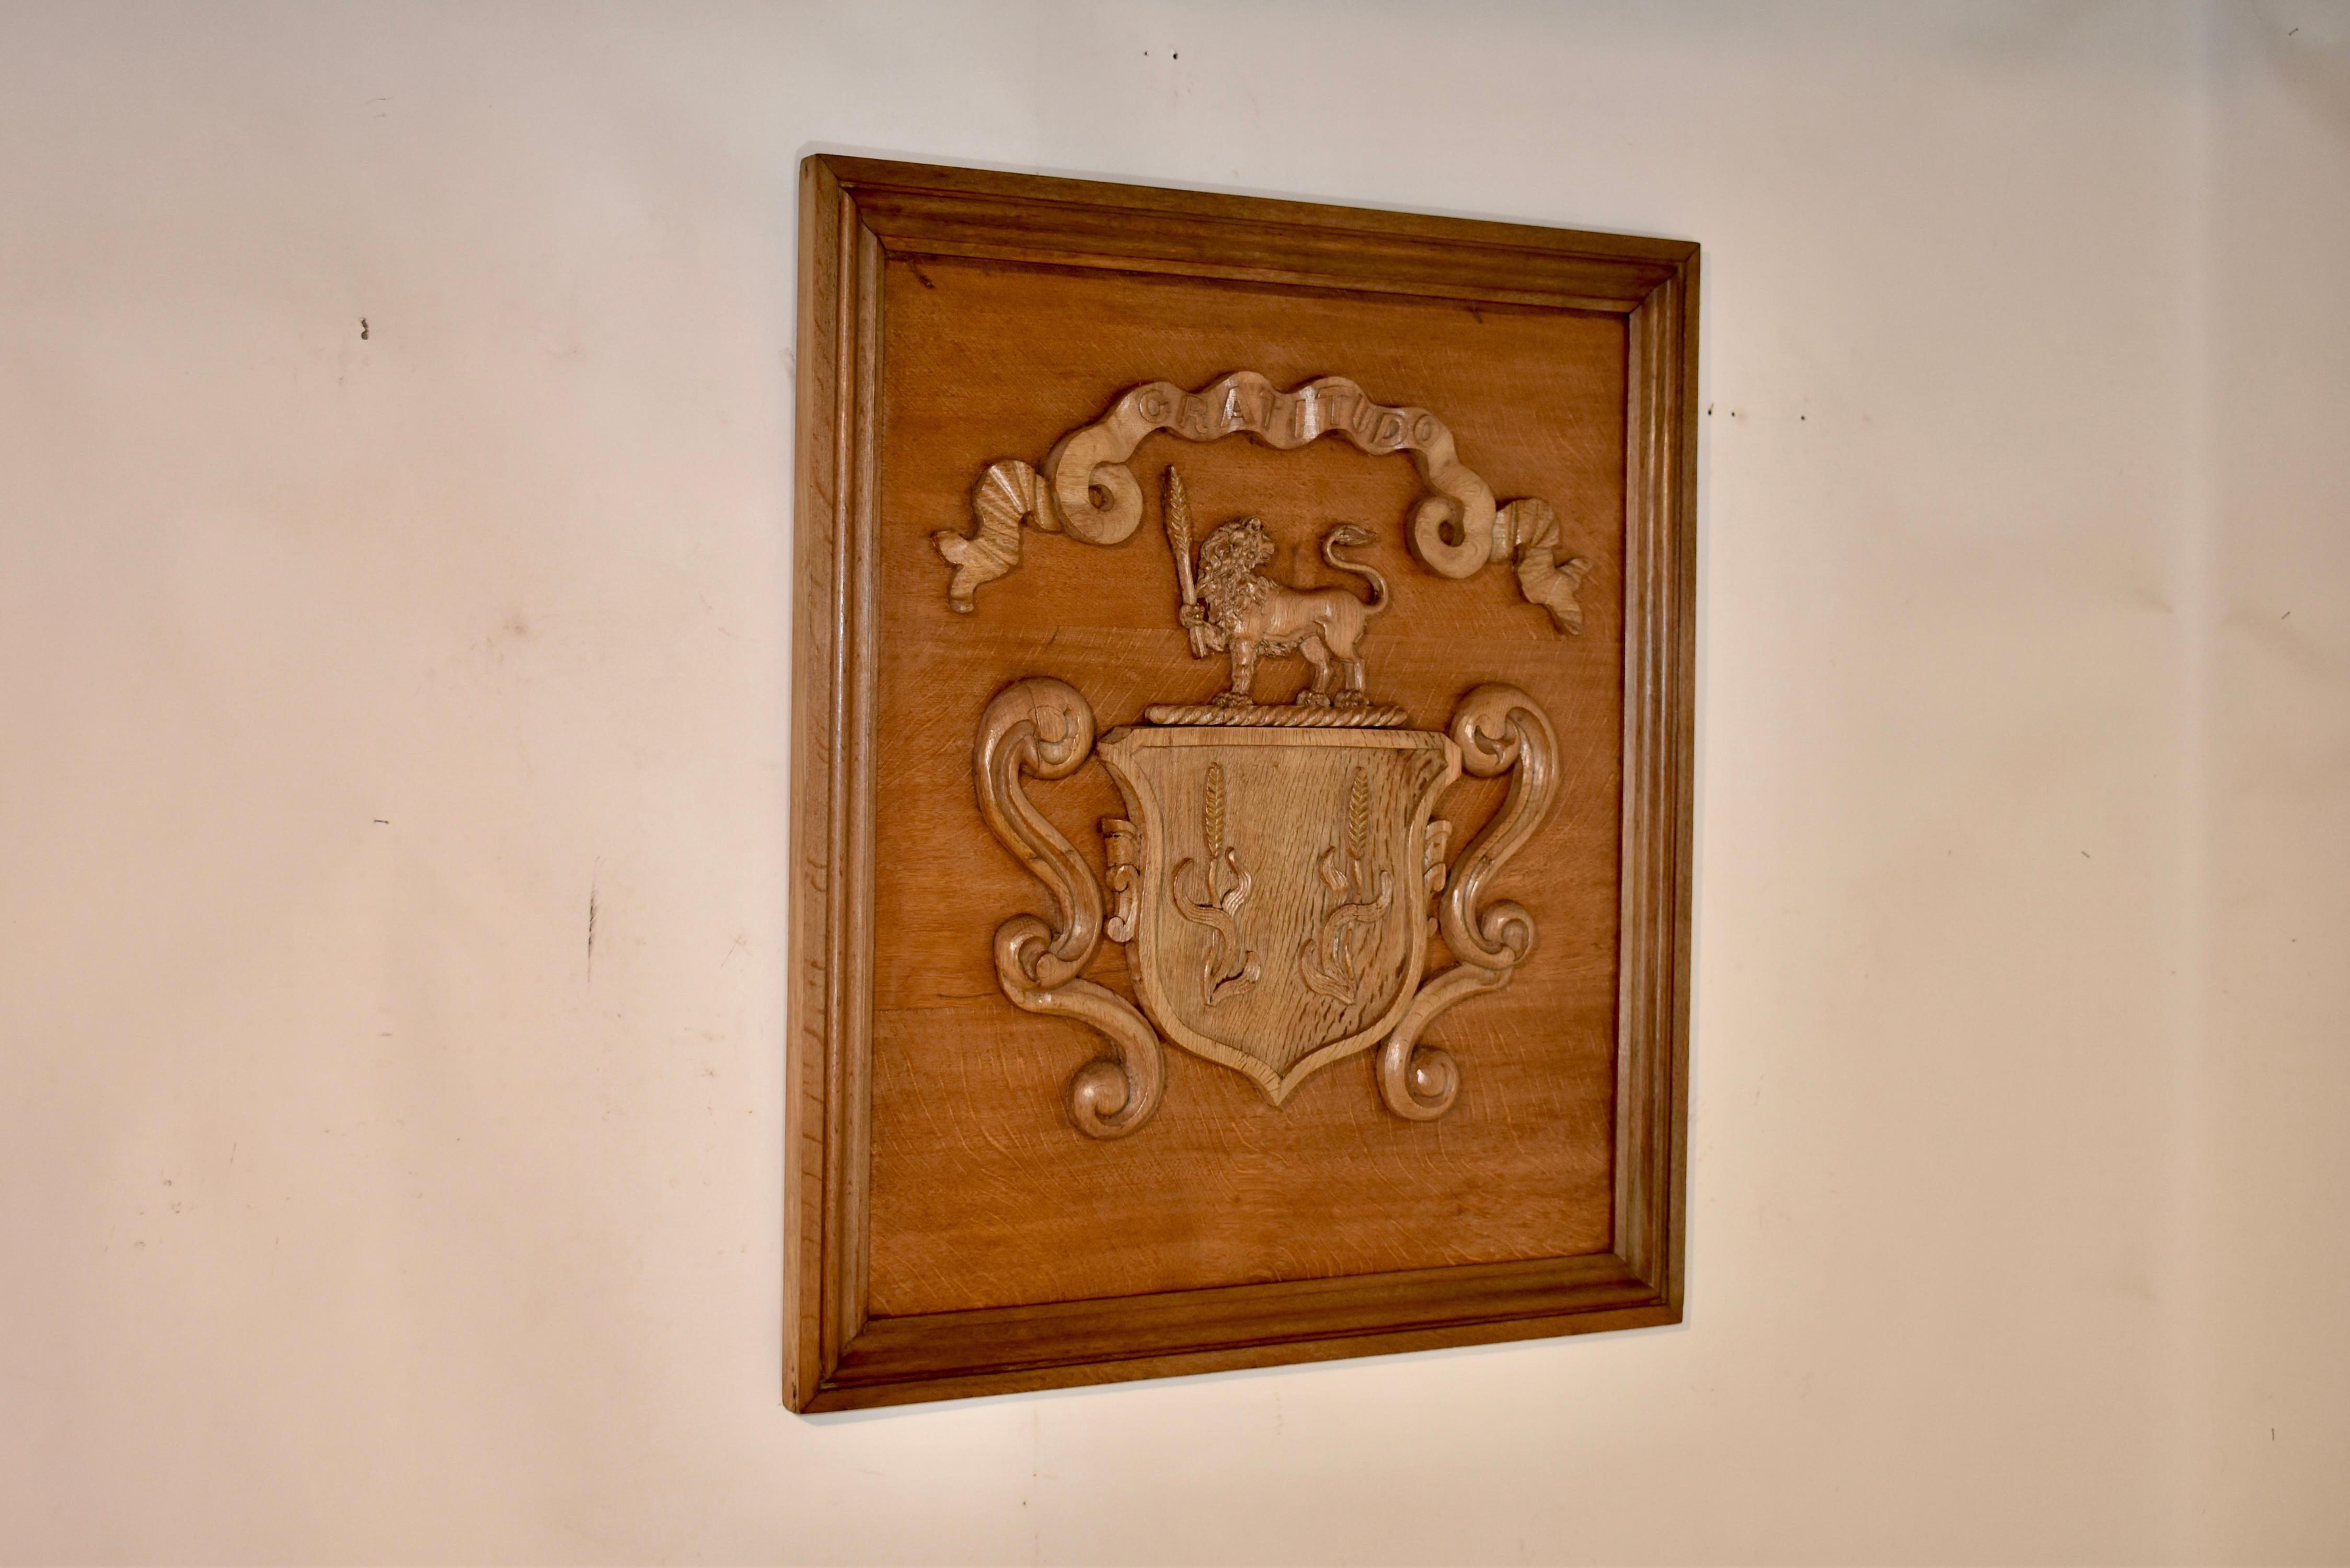 19. Jahrhundert Eiche handgeschnitzt gerahmt Wappen aus England. Das zentrale Motiv besteht aus einem Schild mit zwei Weizenschäften, flankiert von dekorativen Schriftrollen und gekrönt von einem stehenden königlichen Löwen, der ebenfalls einen